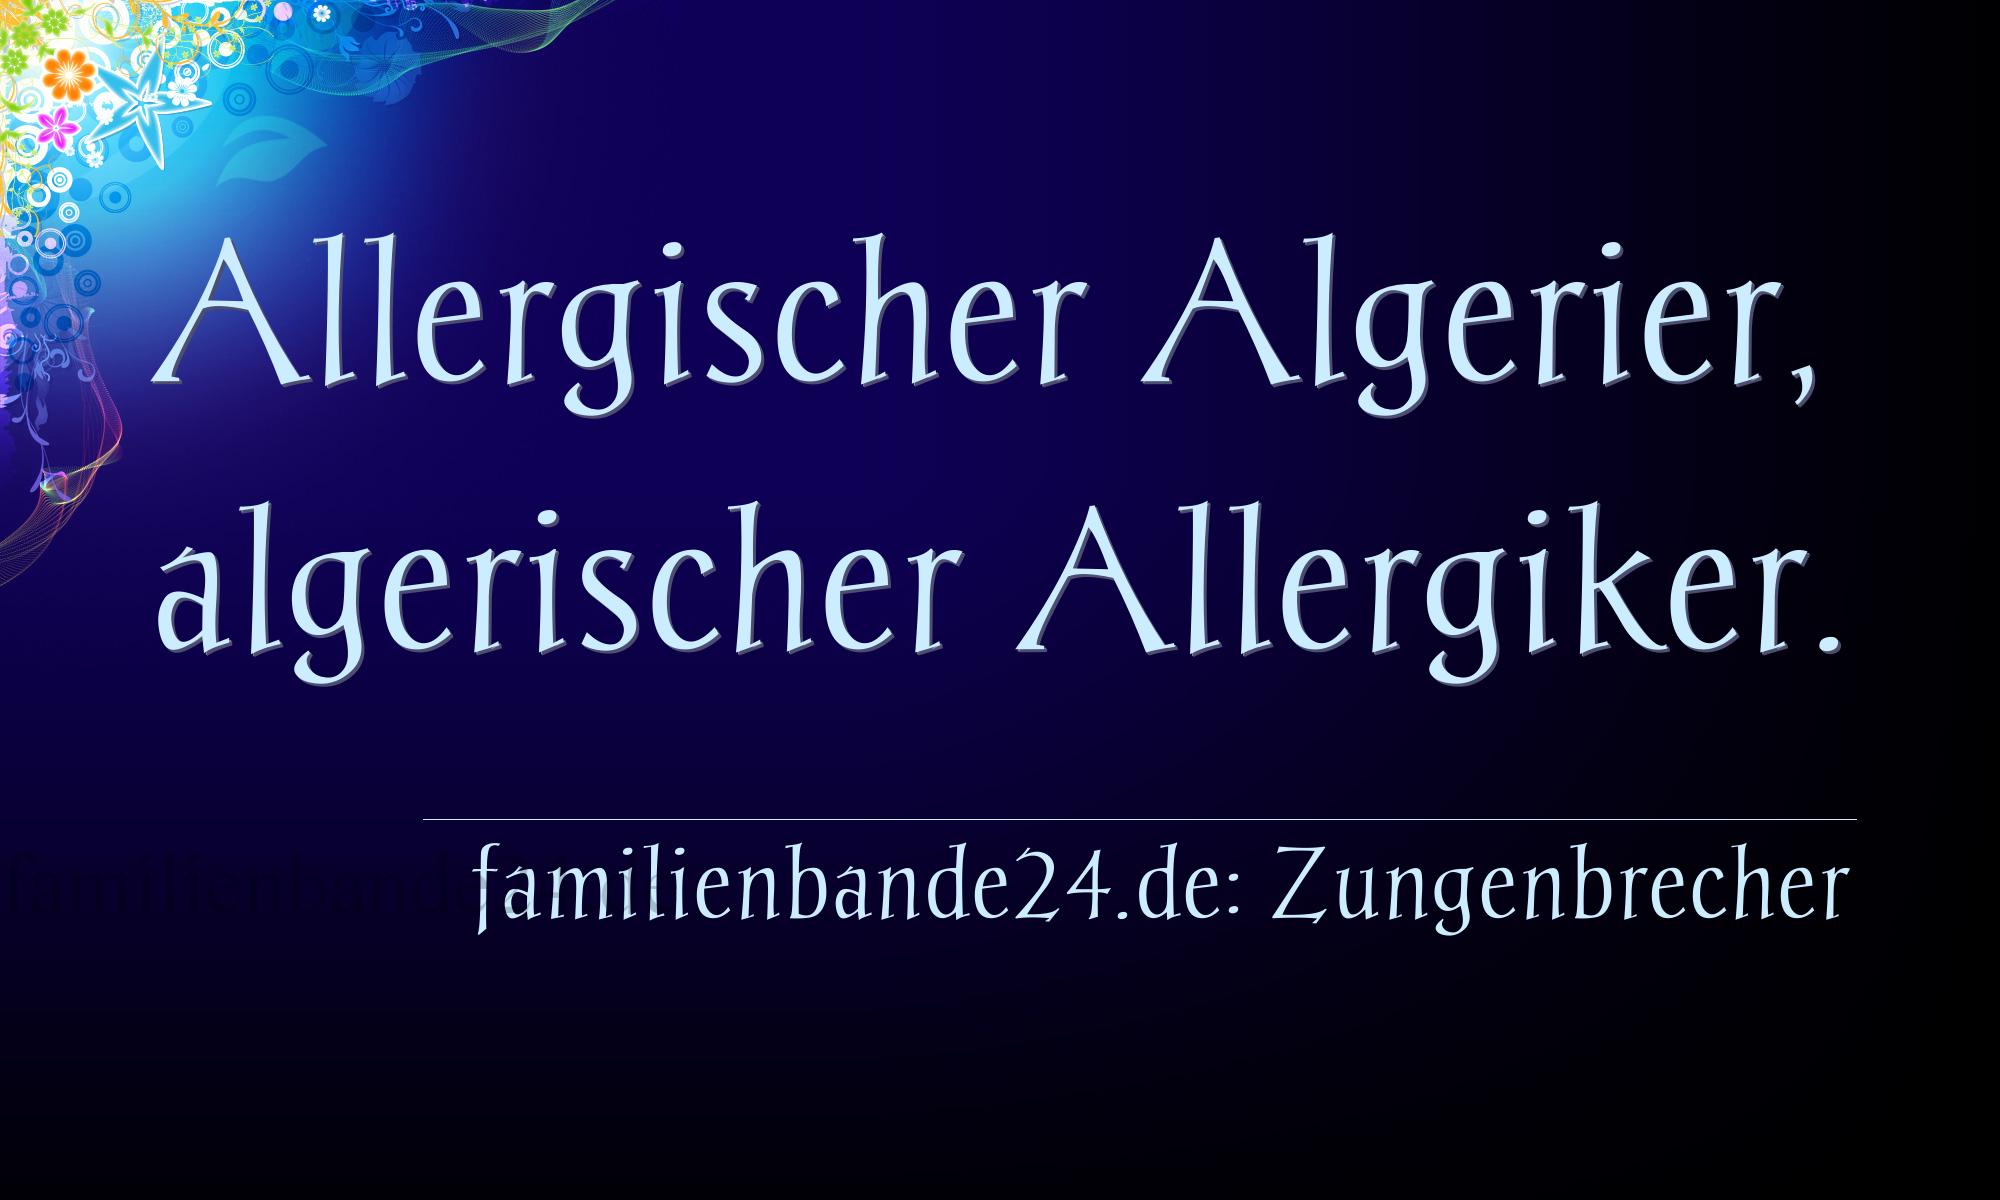 Zungenbrecher Nr. 791: Allergischer Algerier, algerischer Allergiker.